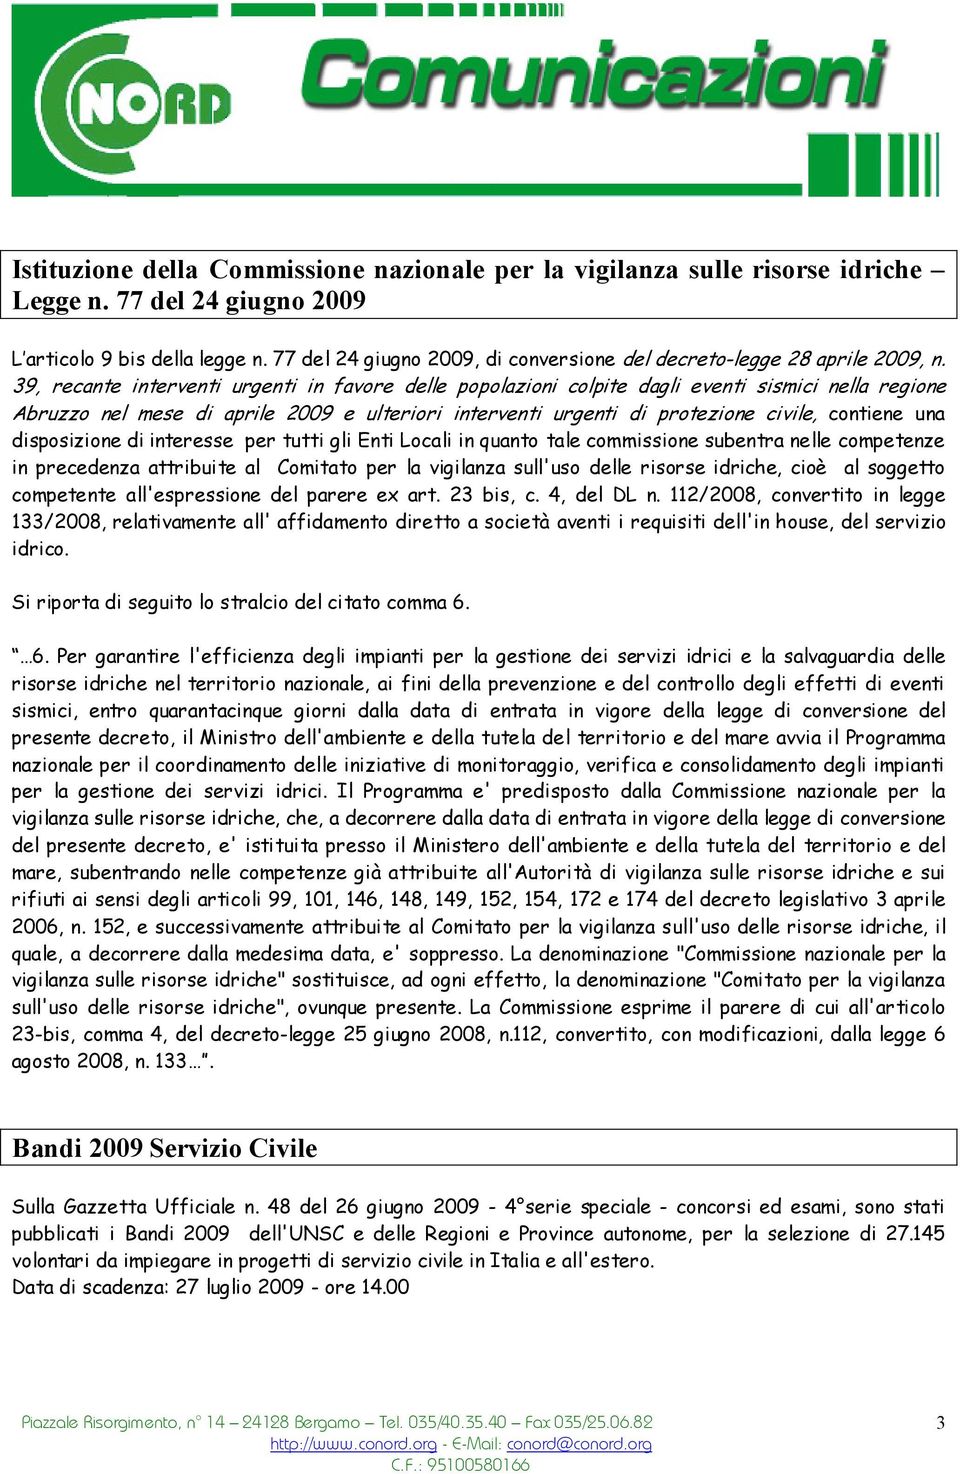 39, recante interventi urgenti in favore delle popolazioni colpite dagli eventi sismici nella regione Abruzzo nel mese di aprile 2009 e ulteriori interventi urgenti di protezione civile, contiene una